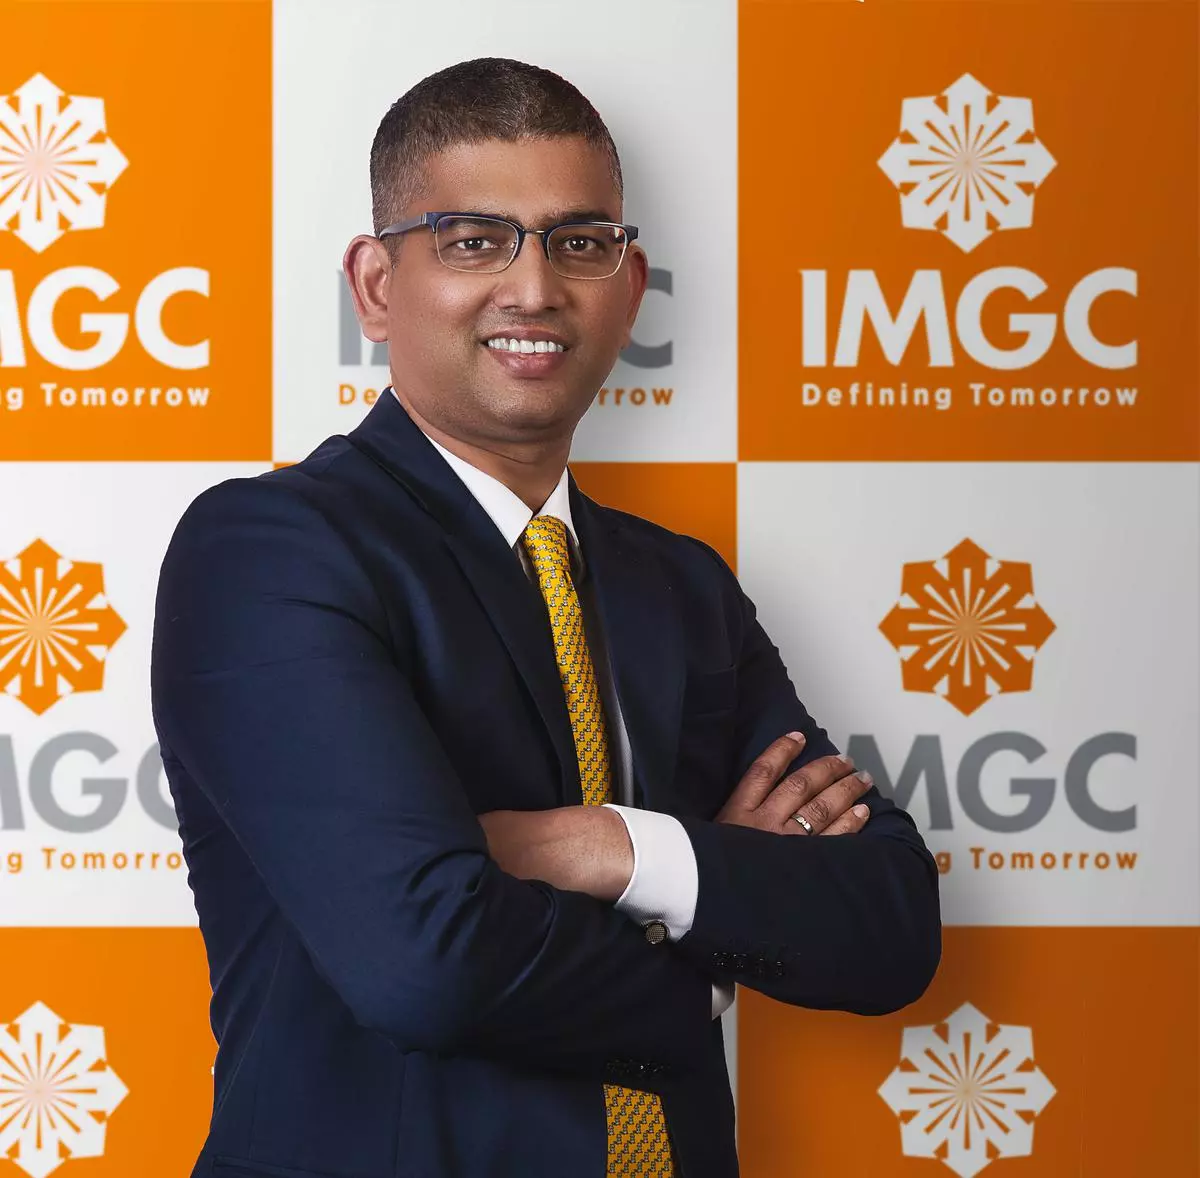 IMGC CEO Mahesh Misra